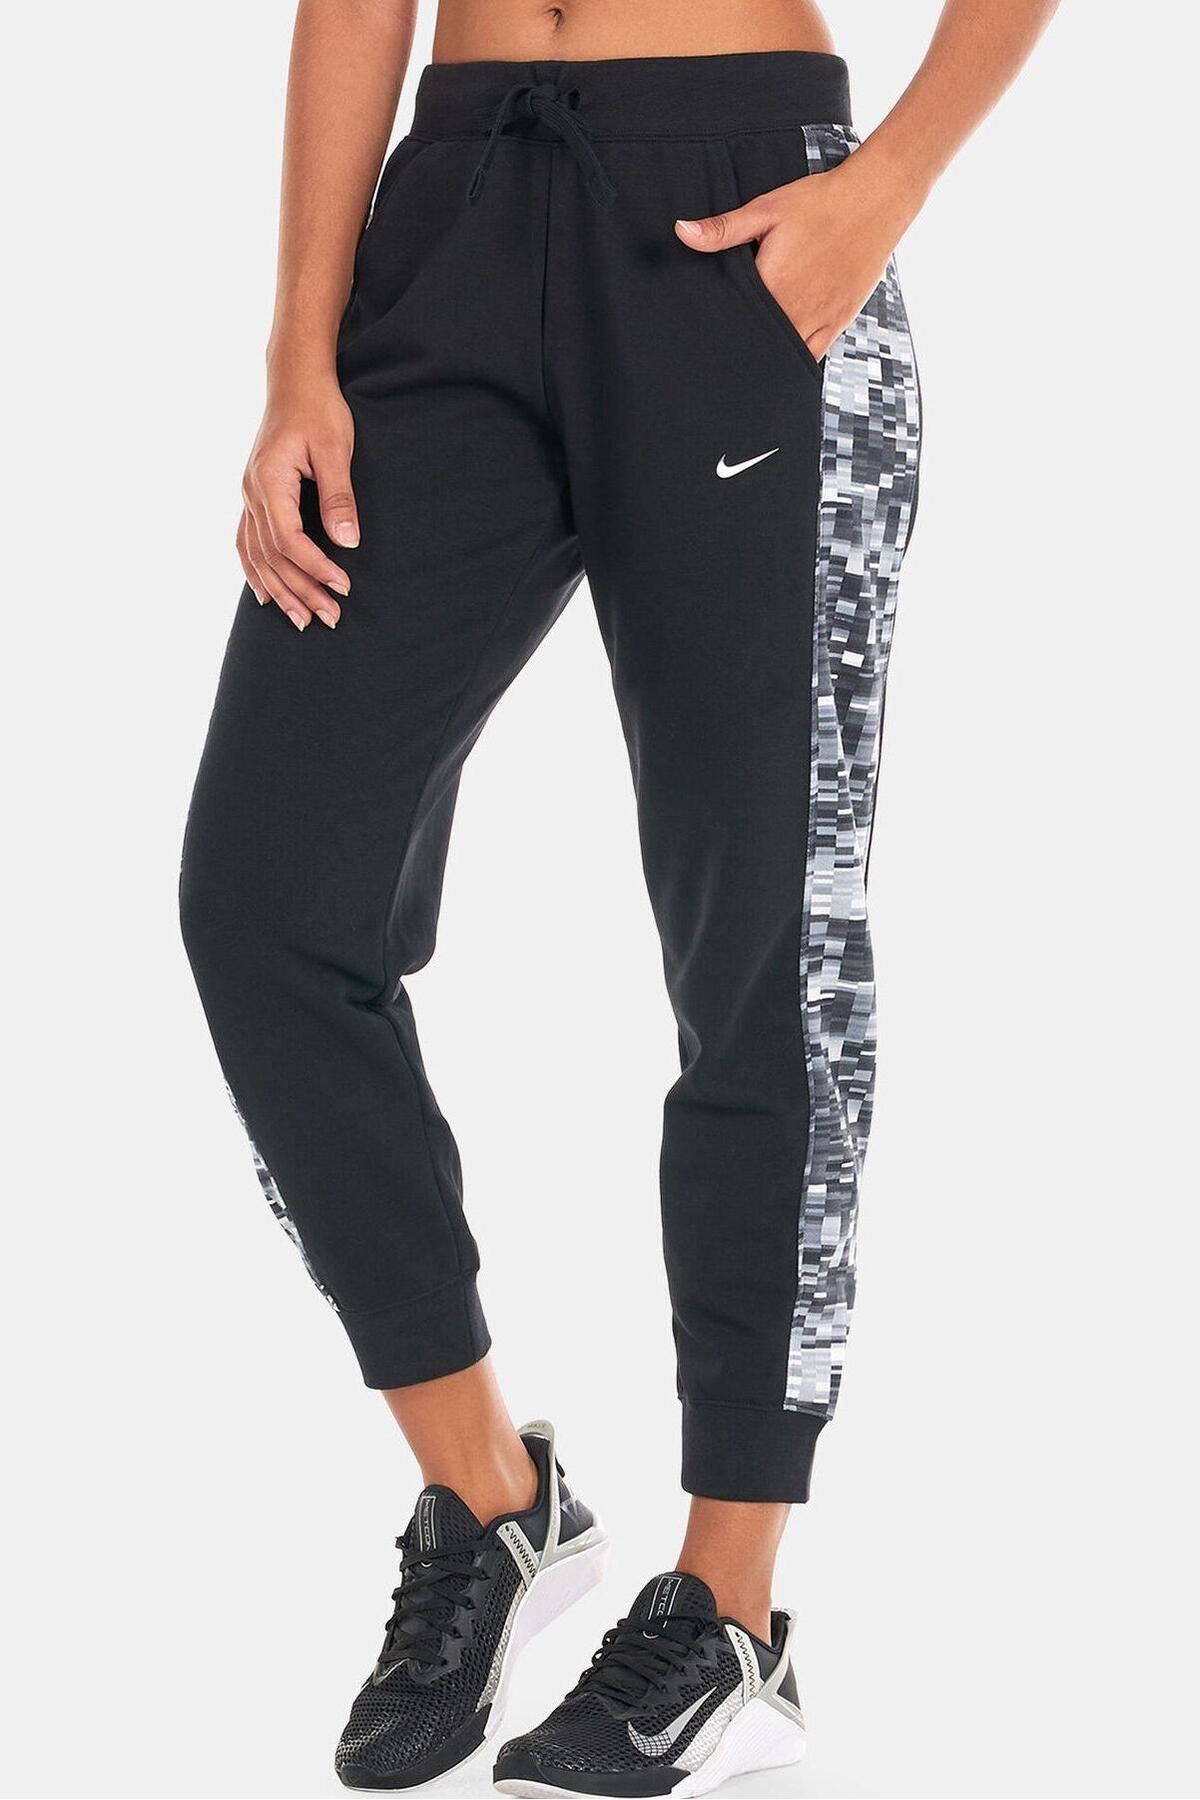 Nike Dri Fit Get Fit Pant Standart Fit Kesim Kadın Eşofman Altı